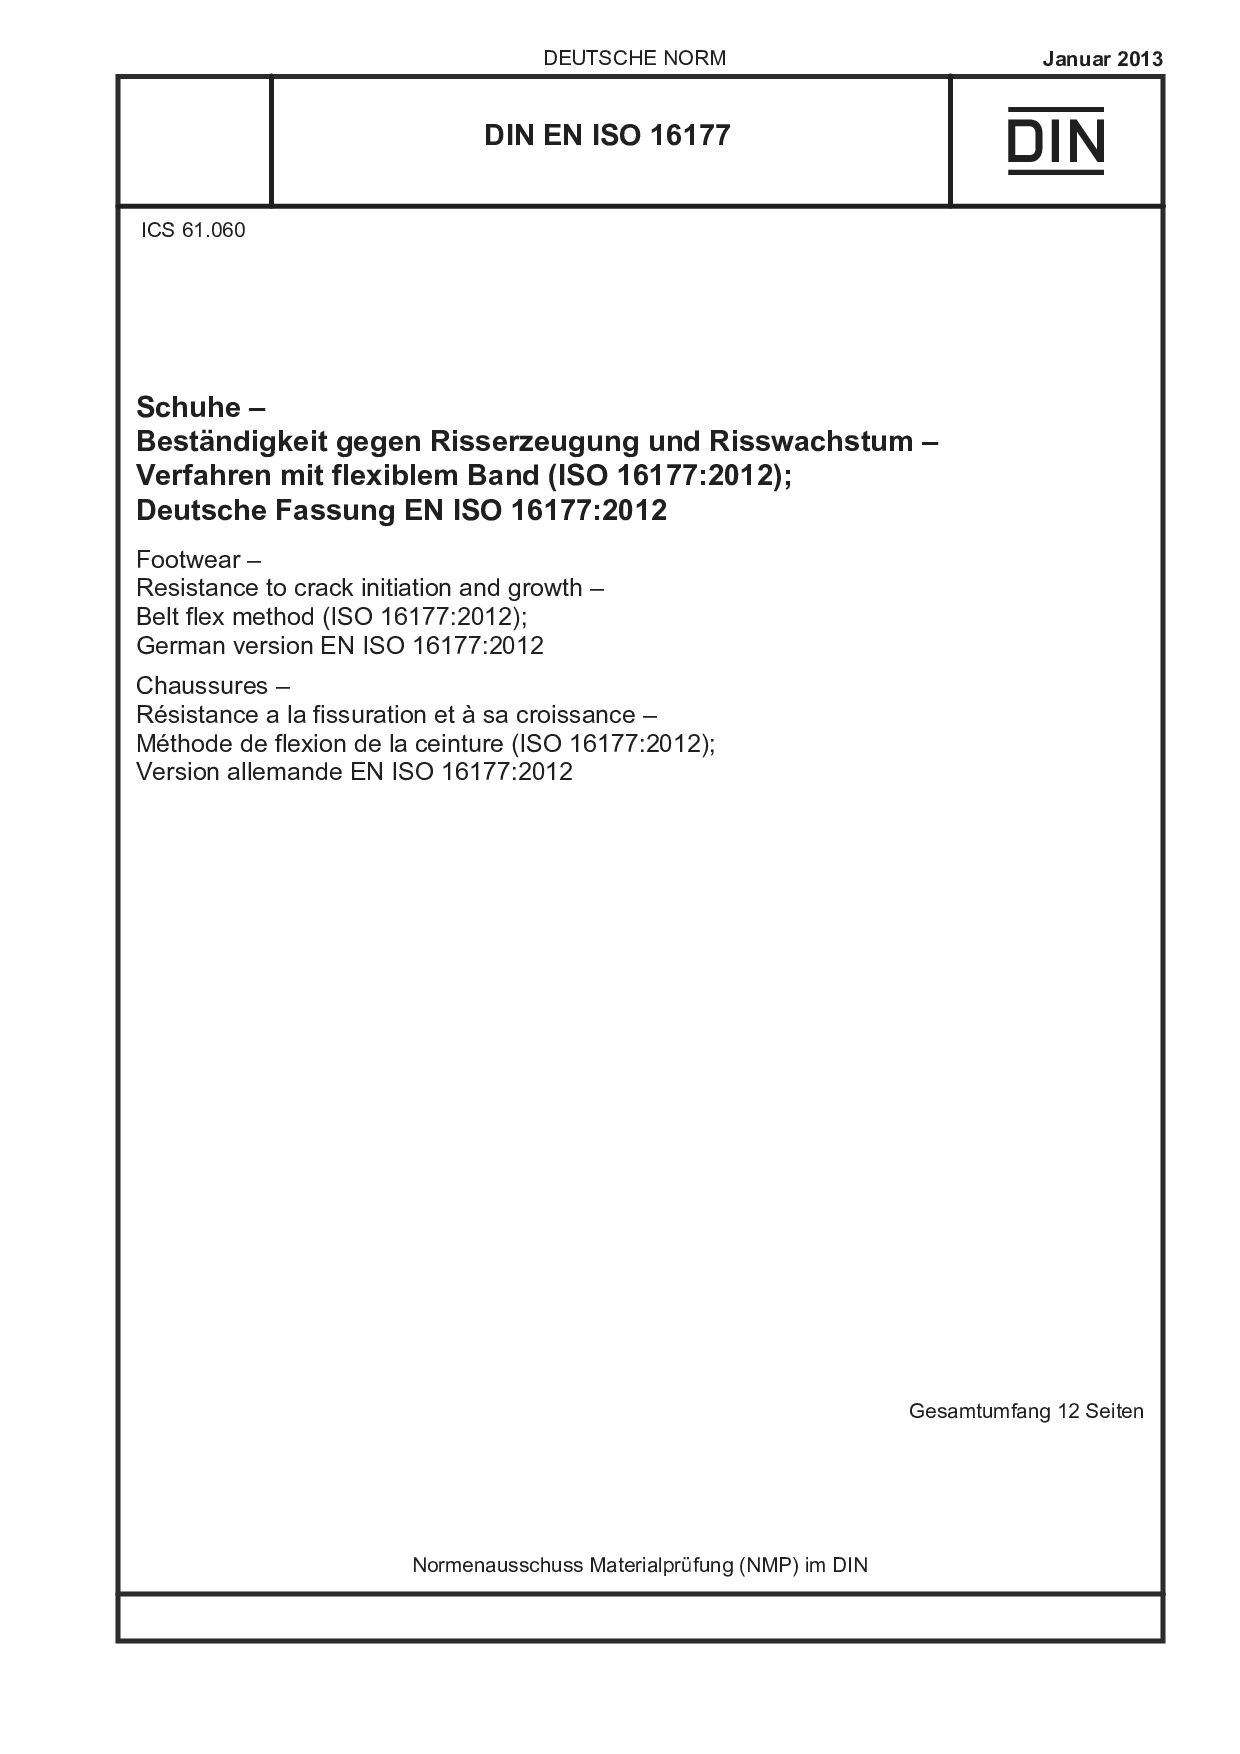 DIN EN ISO 16177:2013封面图